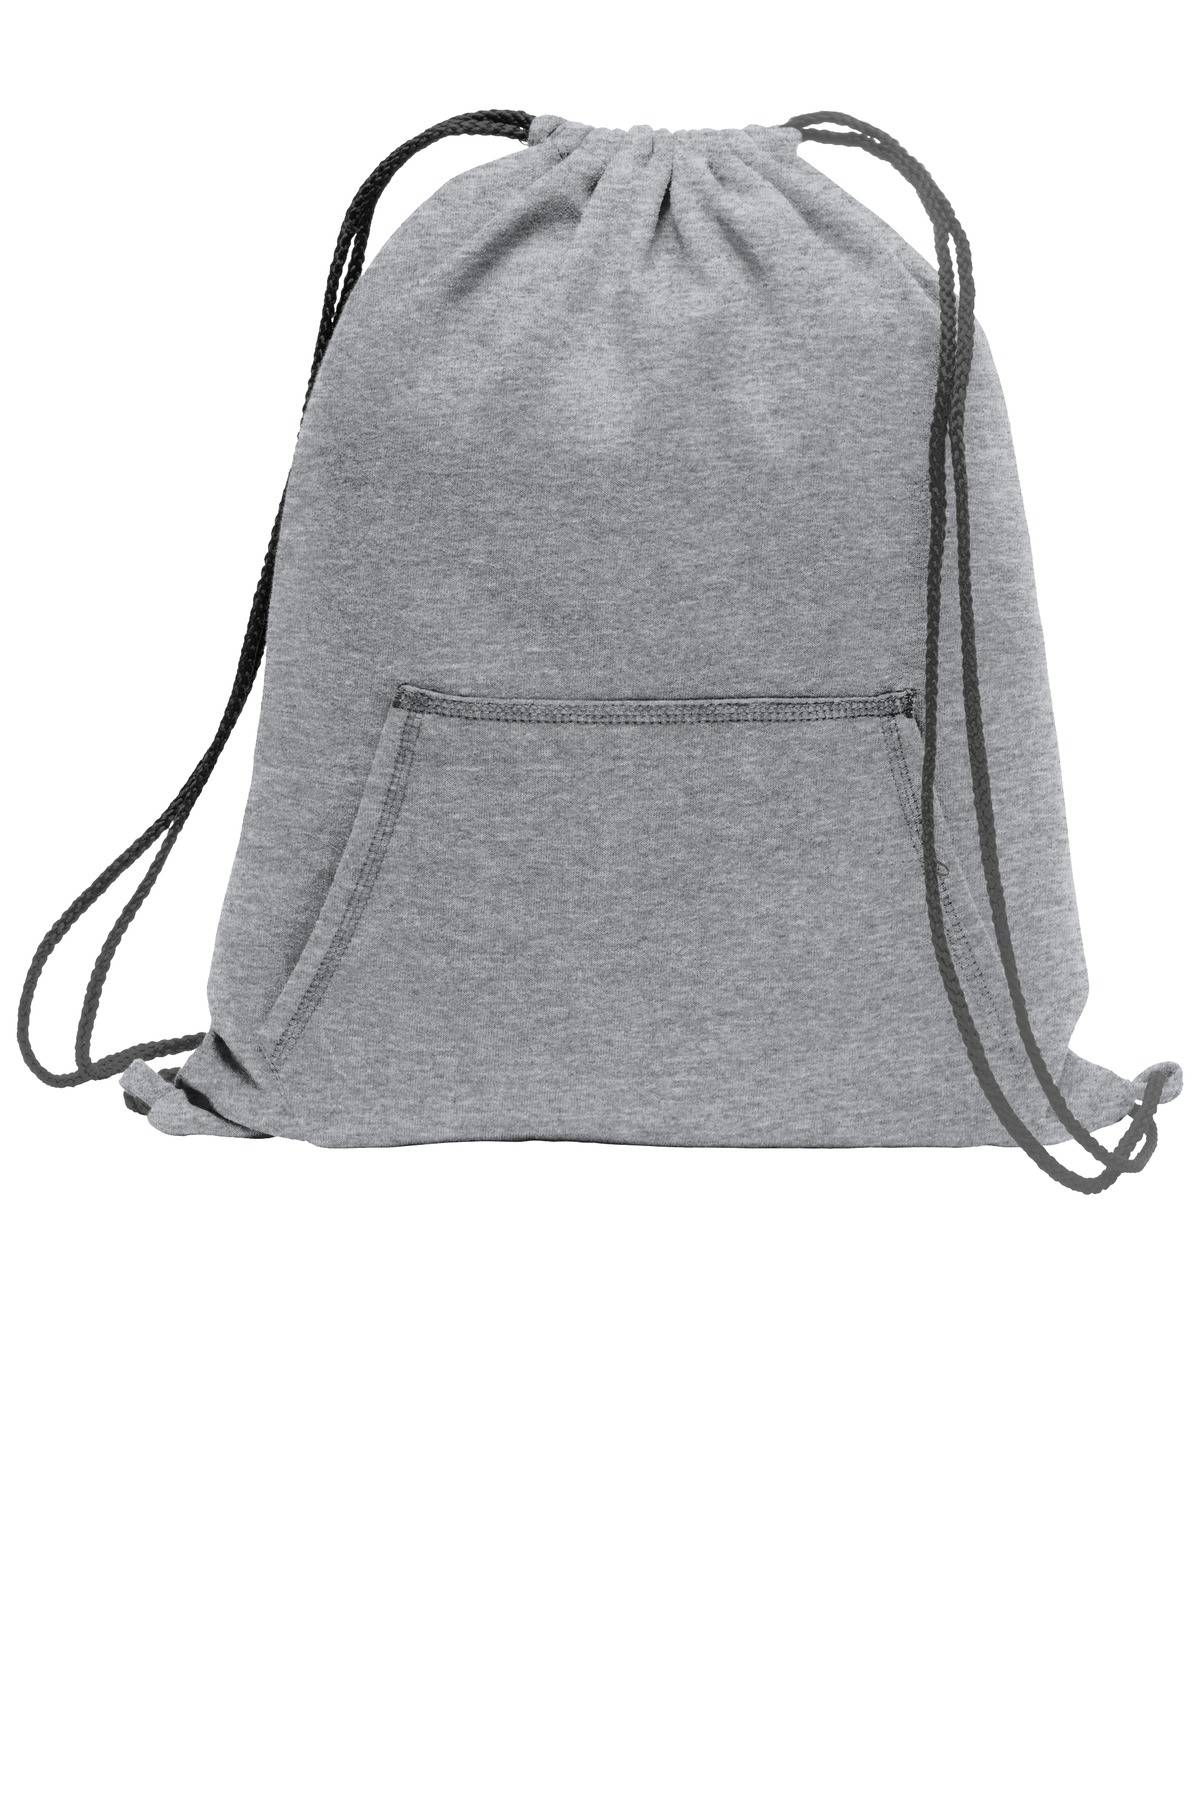 Port & Co Core Fleece Sweatshirt Cinch Pack - BG614